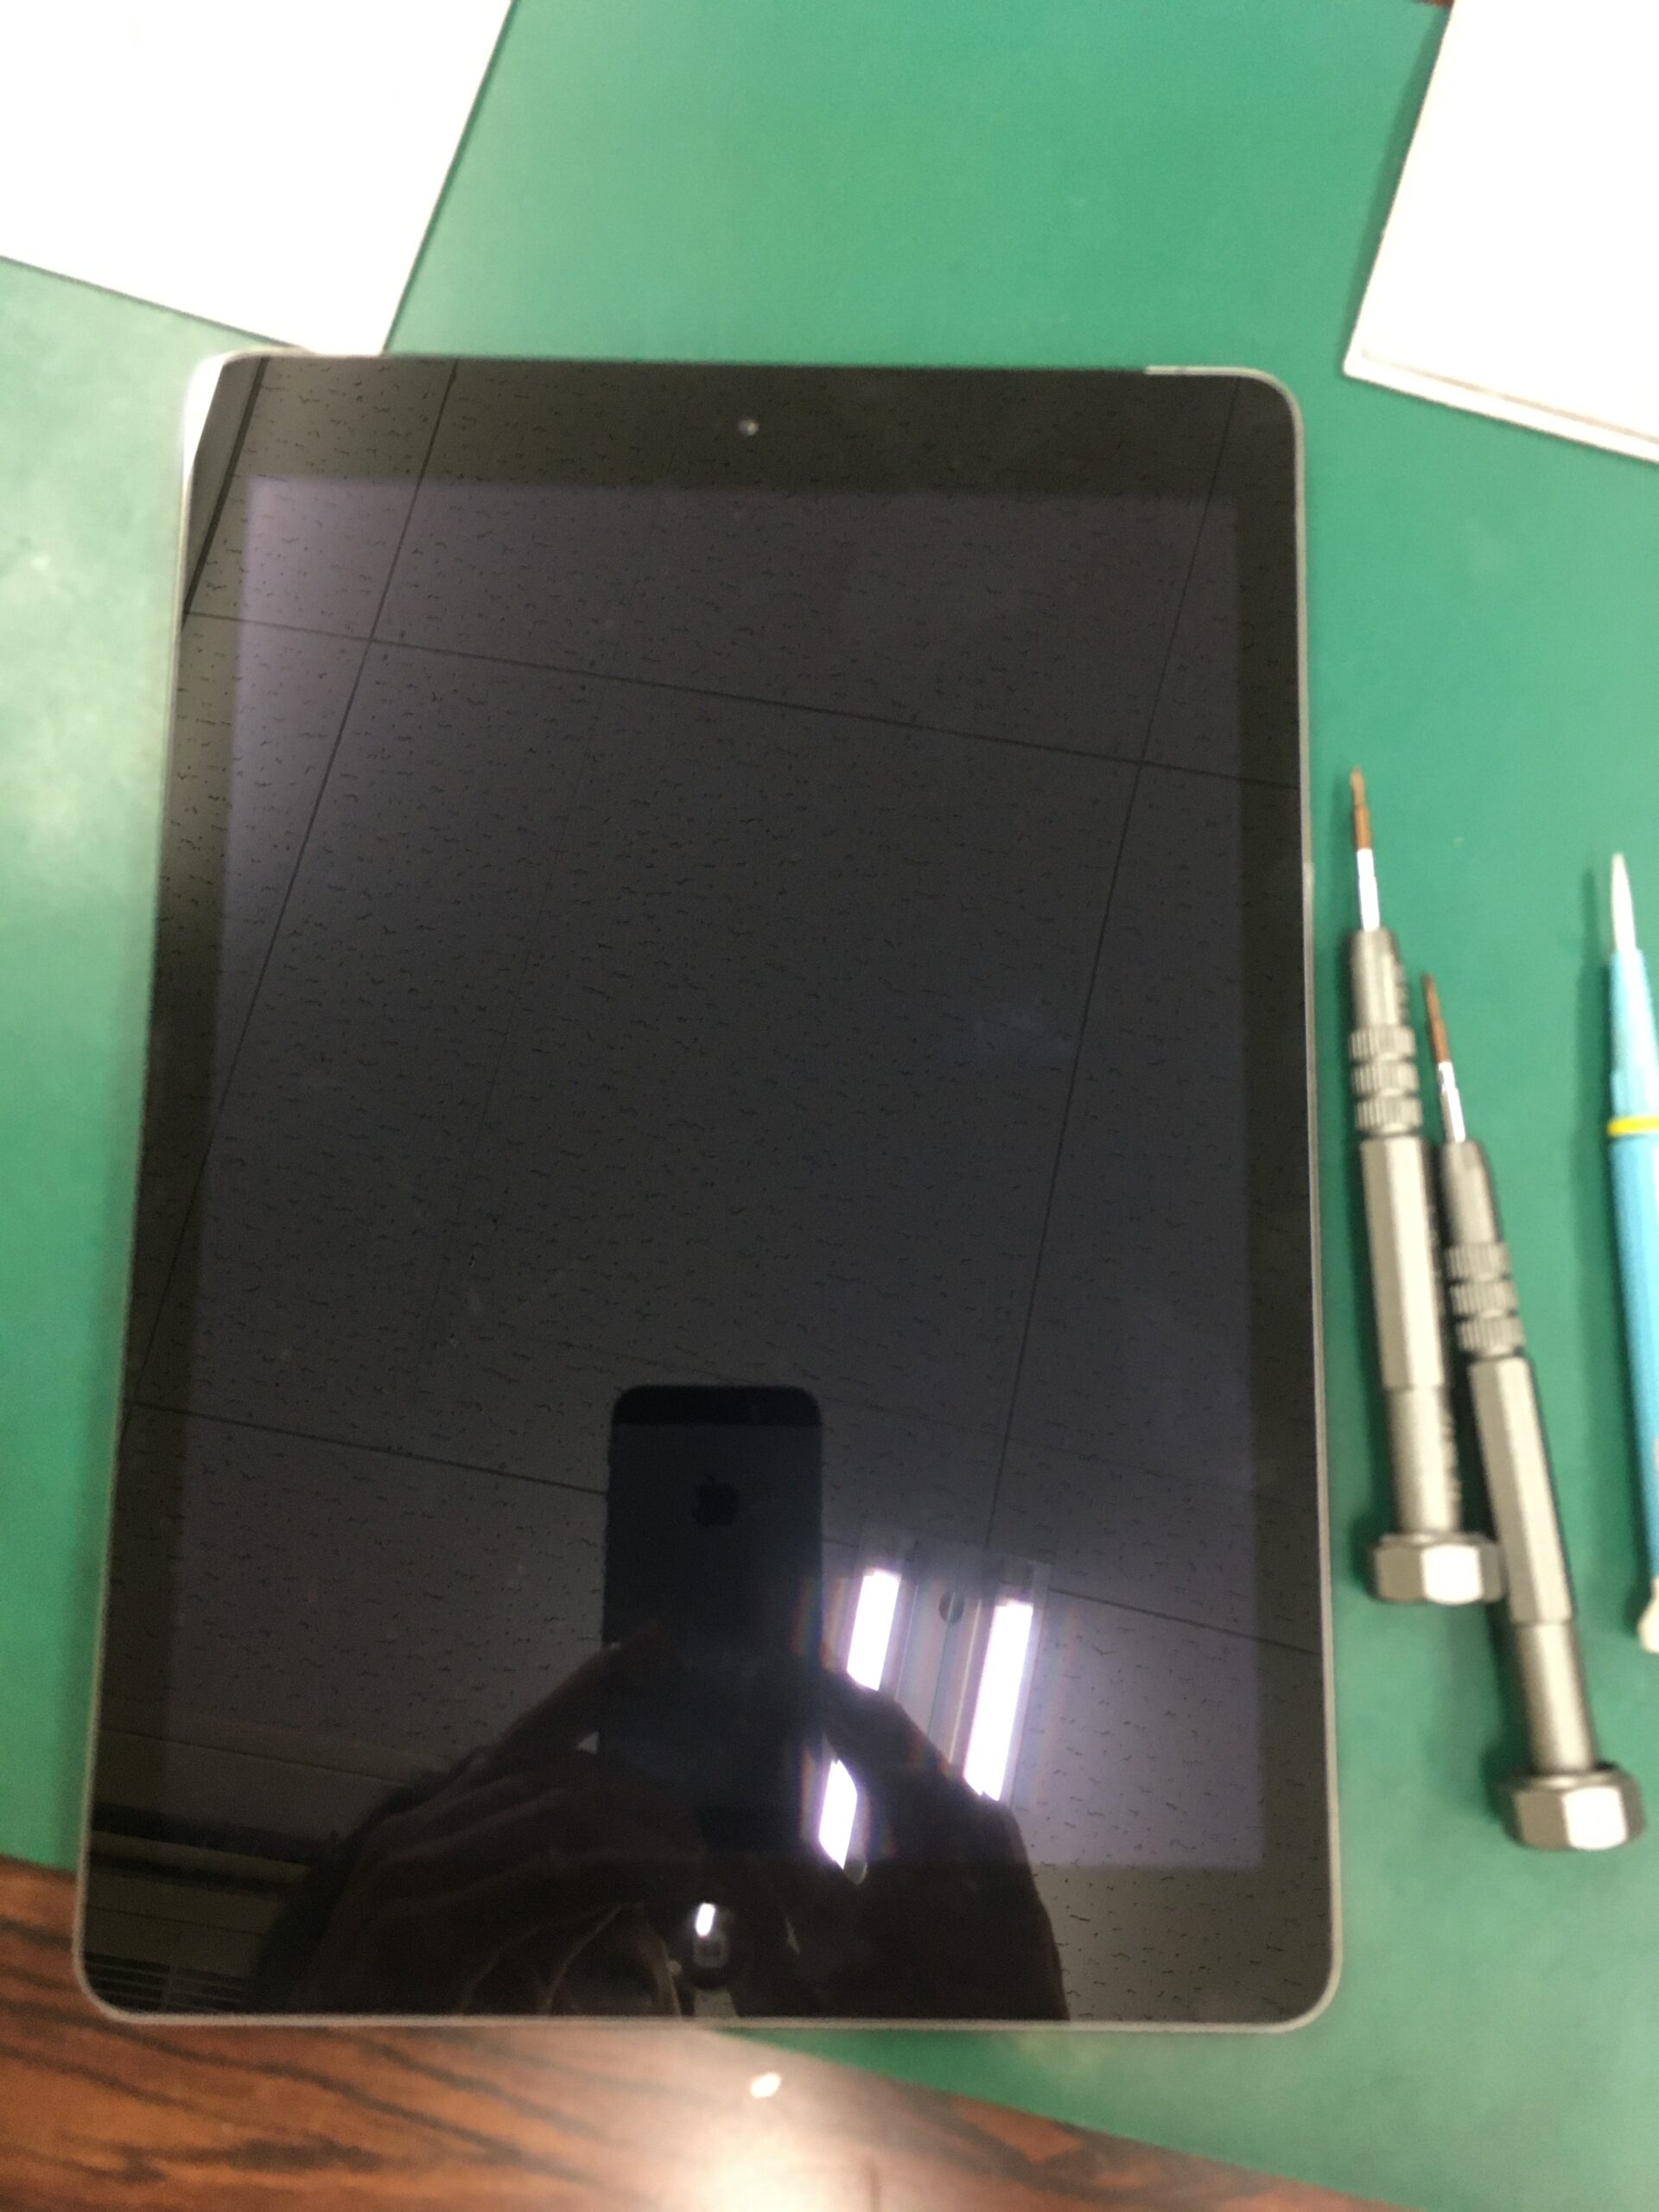 半田市で iPad のガラス画面割れや液晶破損の修理